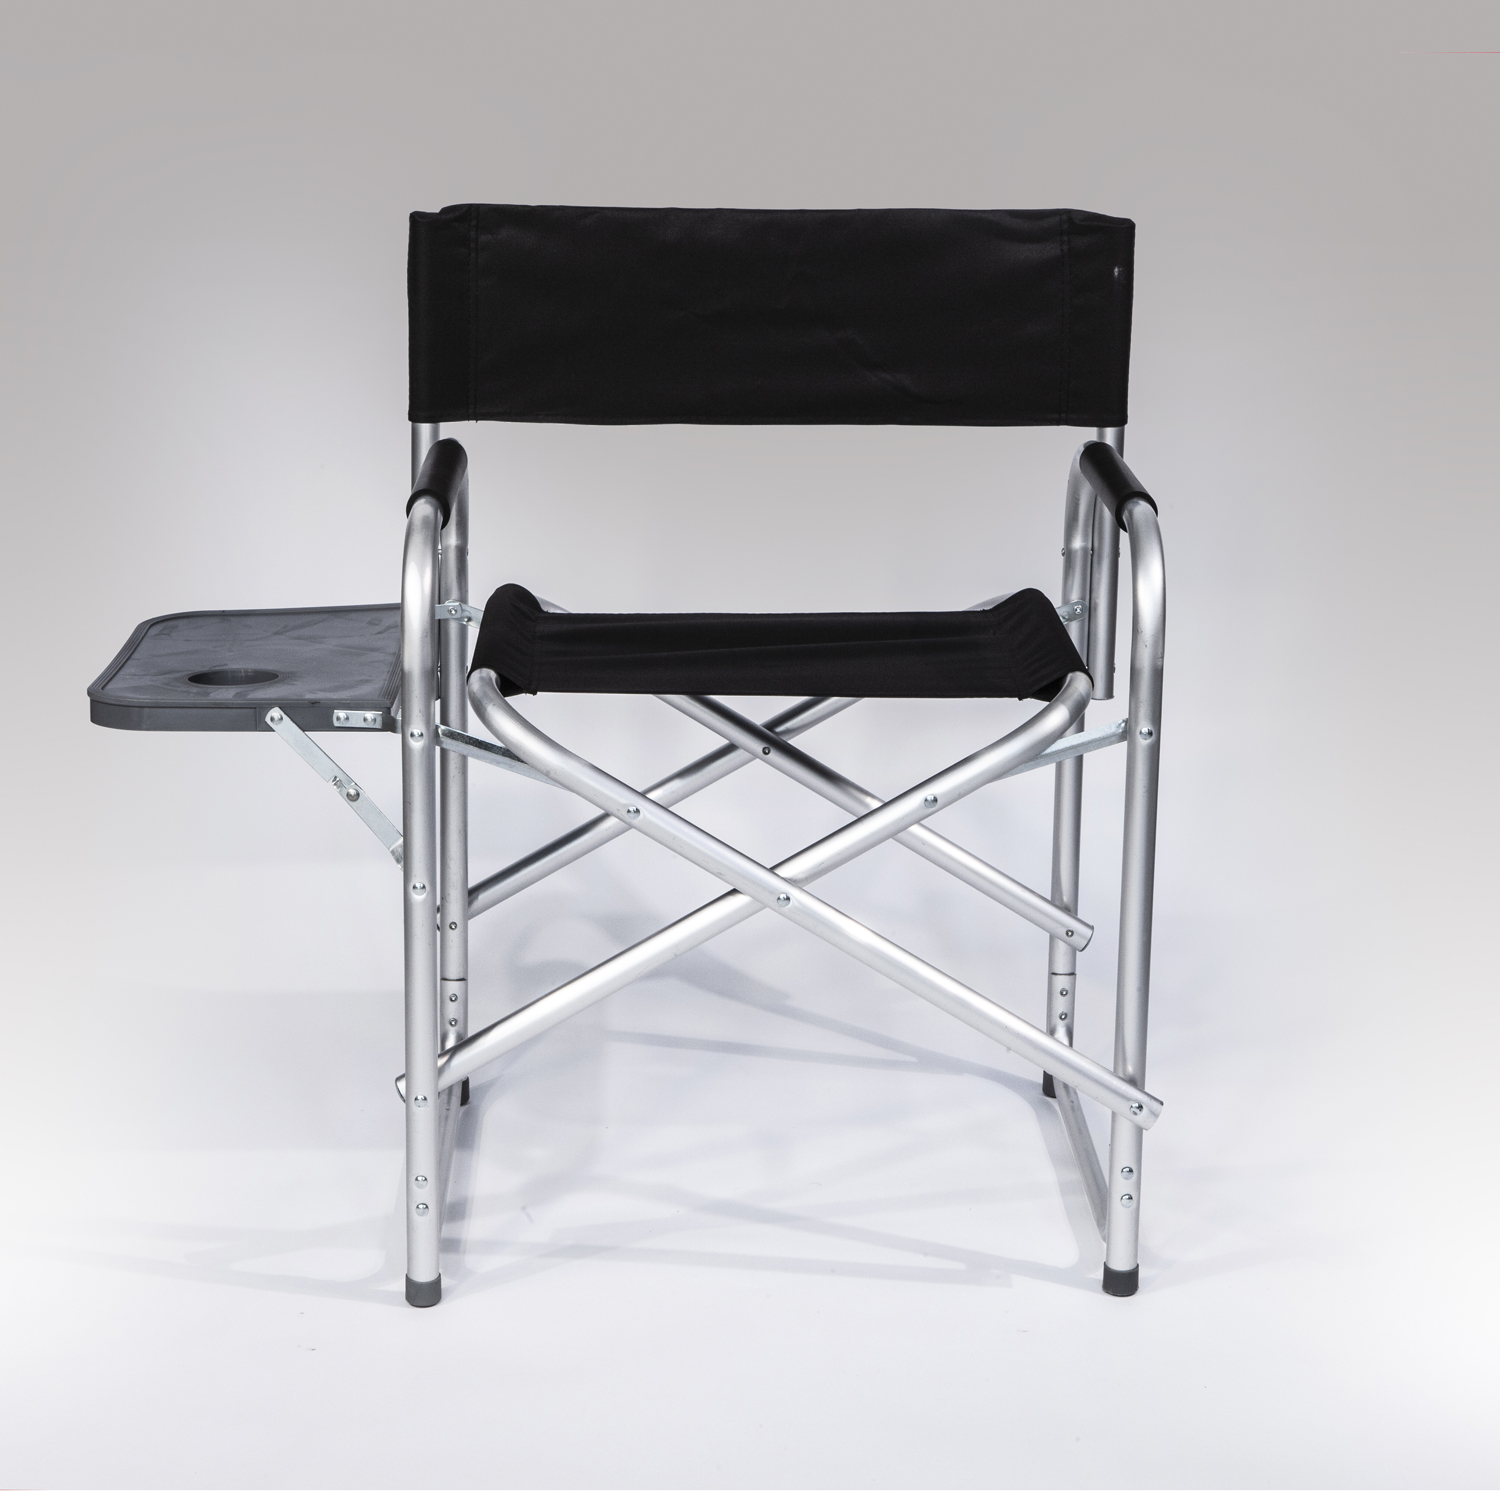 כסא פרמיום אלומיניום + מדף מתקפל חזק וקל. 
מידות כסא 62x85 ס